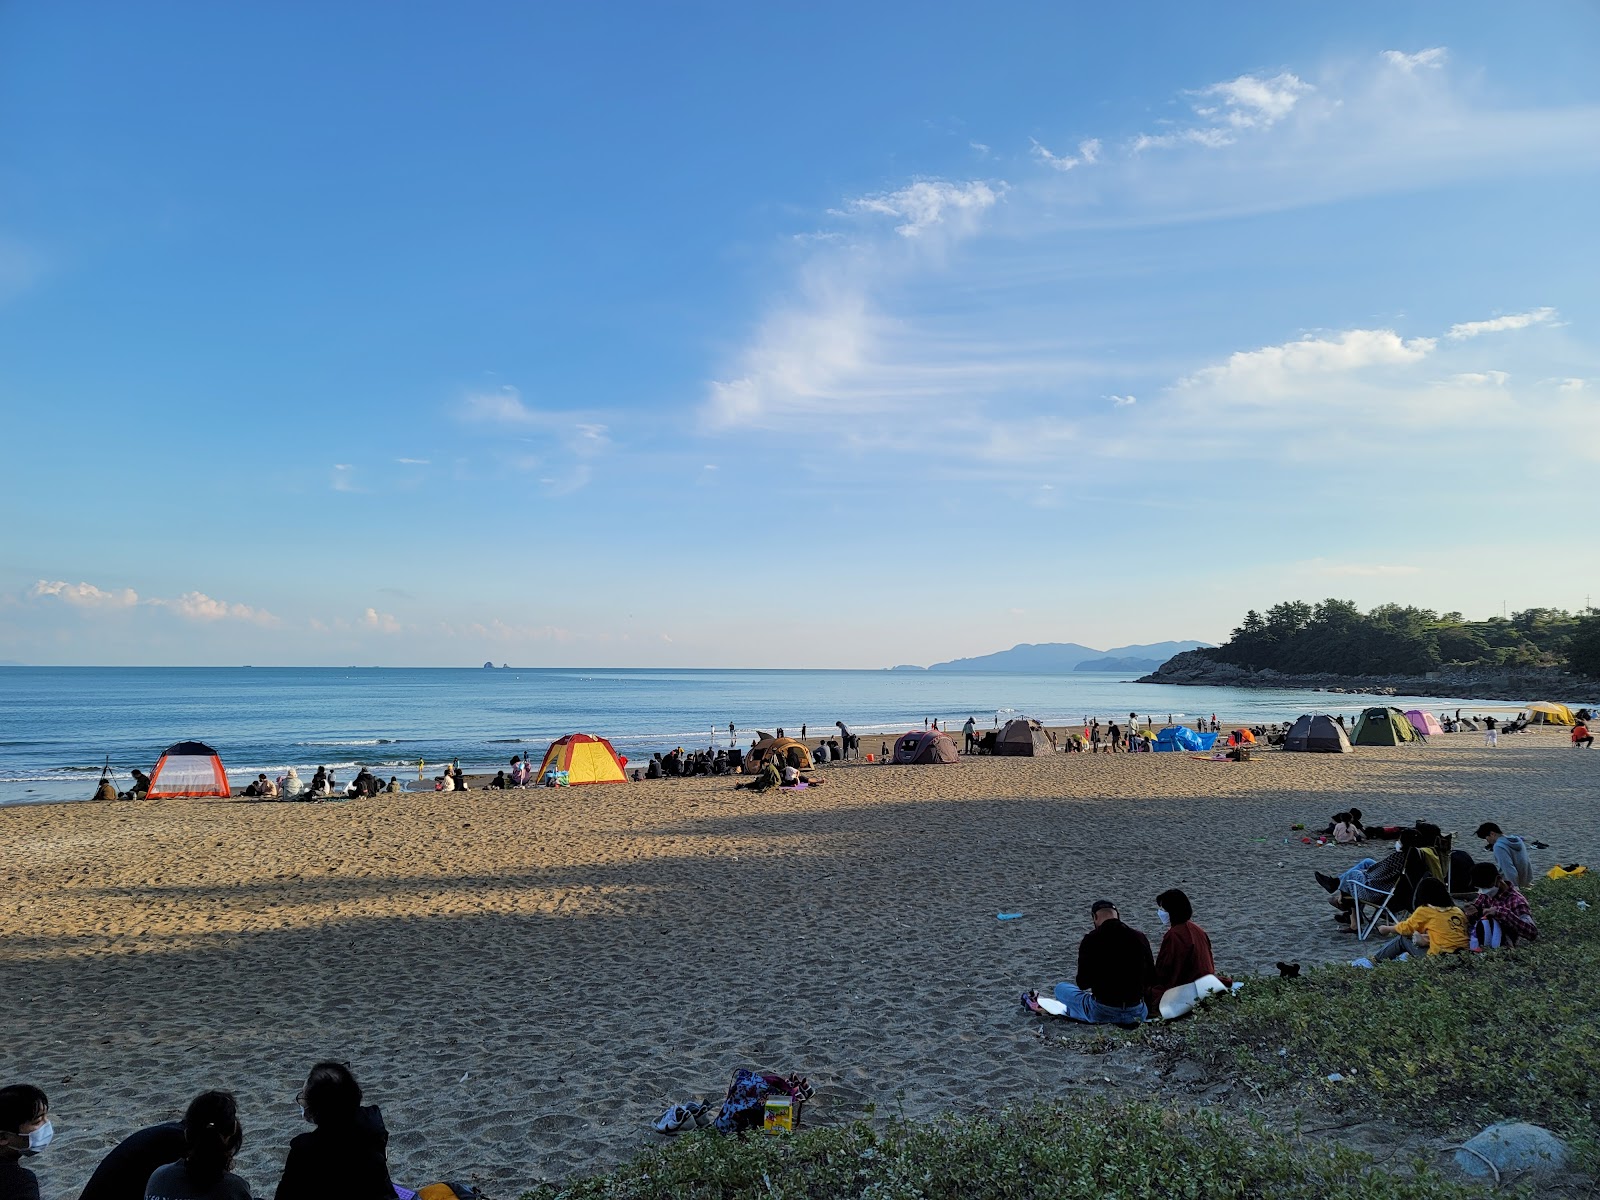 Photo de Namyeol Sunrise Beach - endroit populaire parmi les connaisseurs de la détente